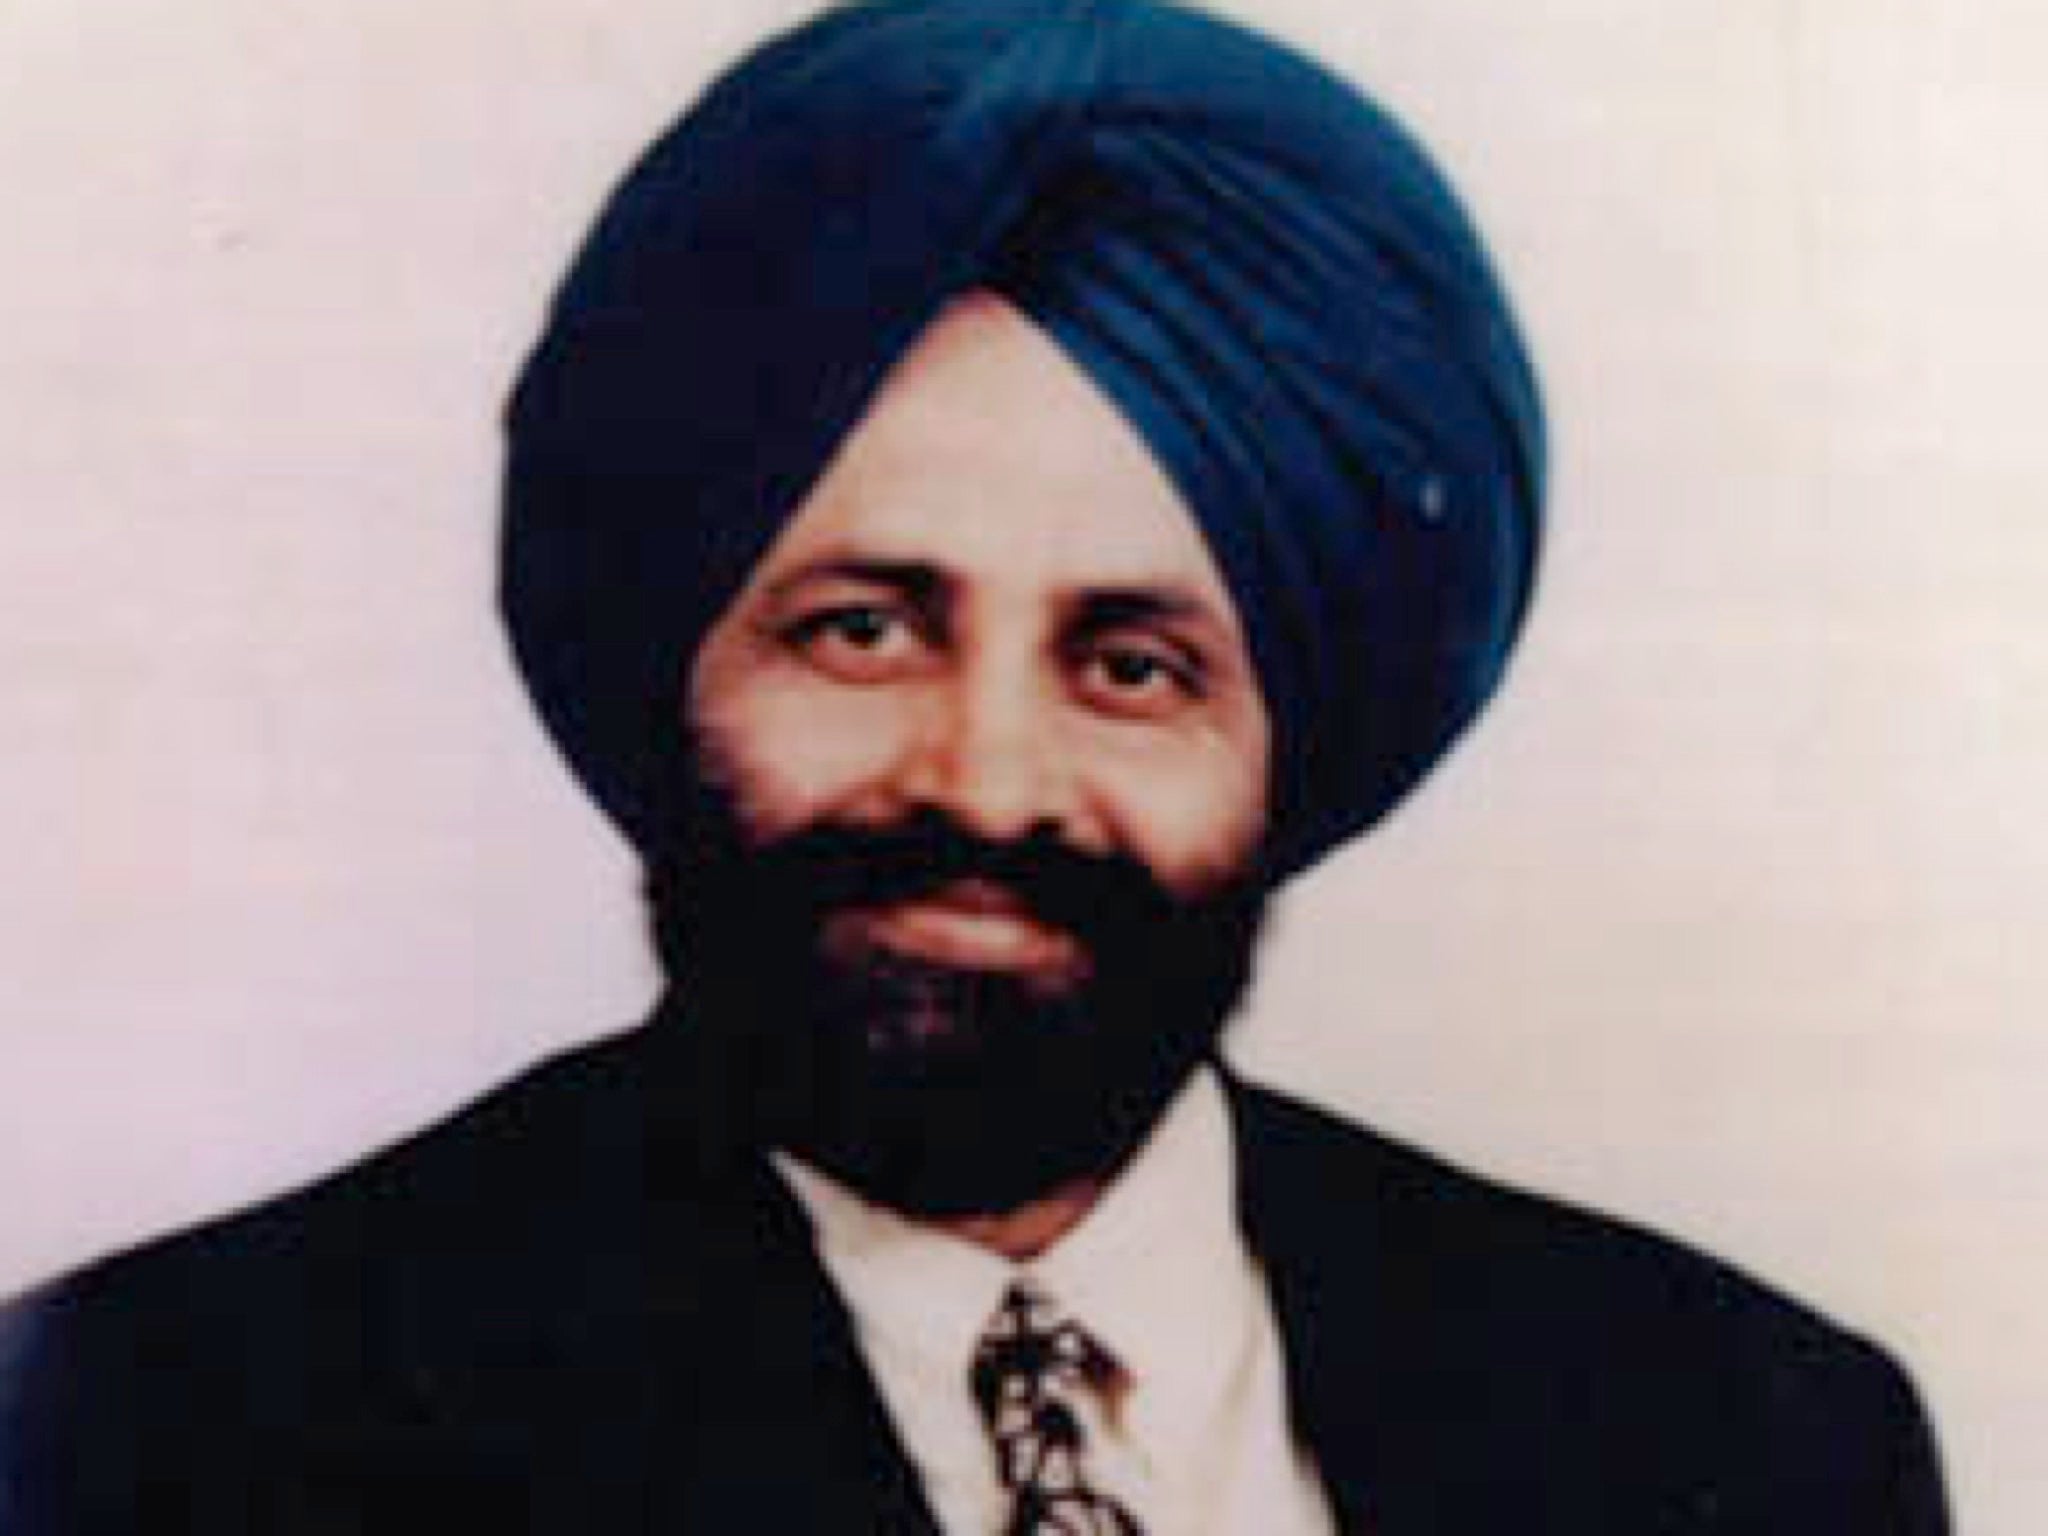 A portrait of Balbir Singh Sodhi.